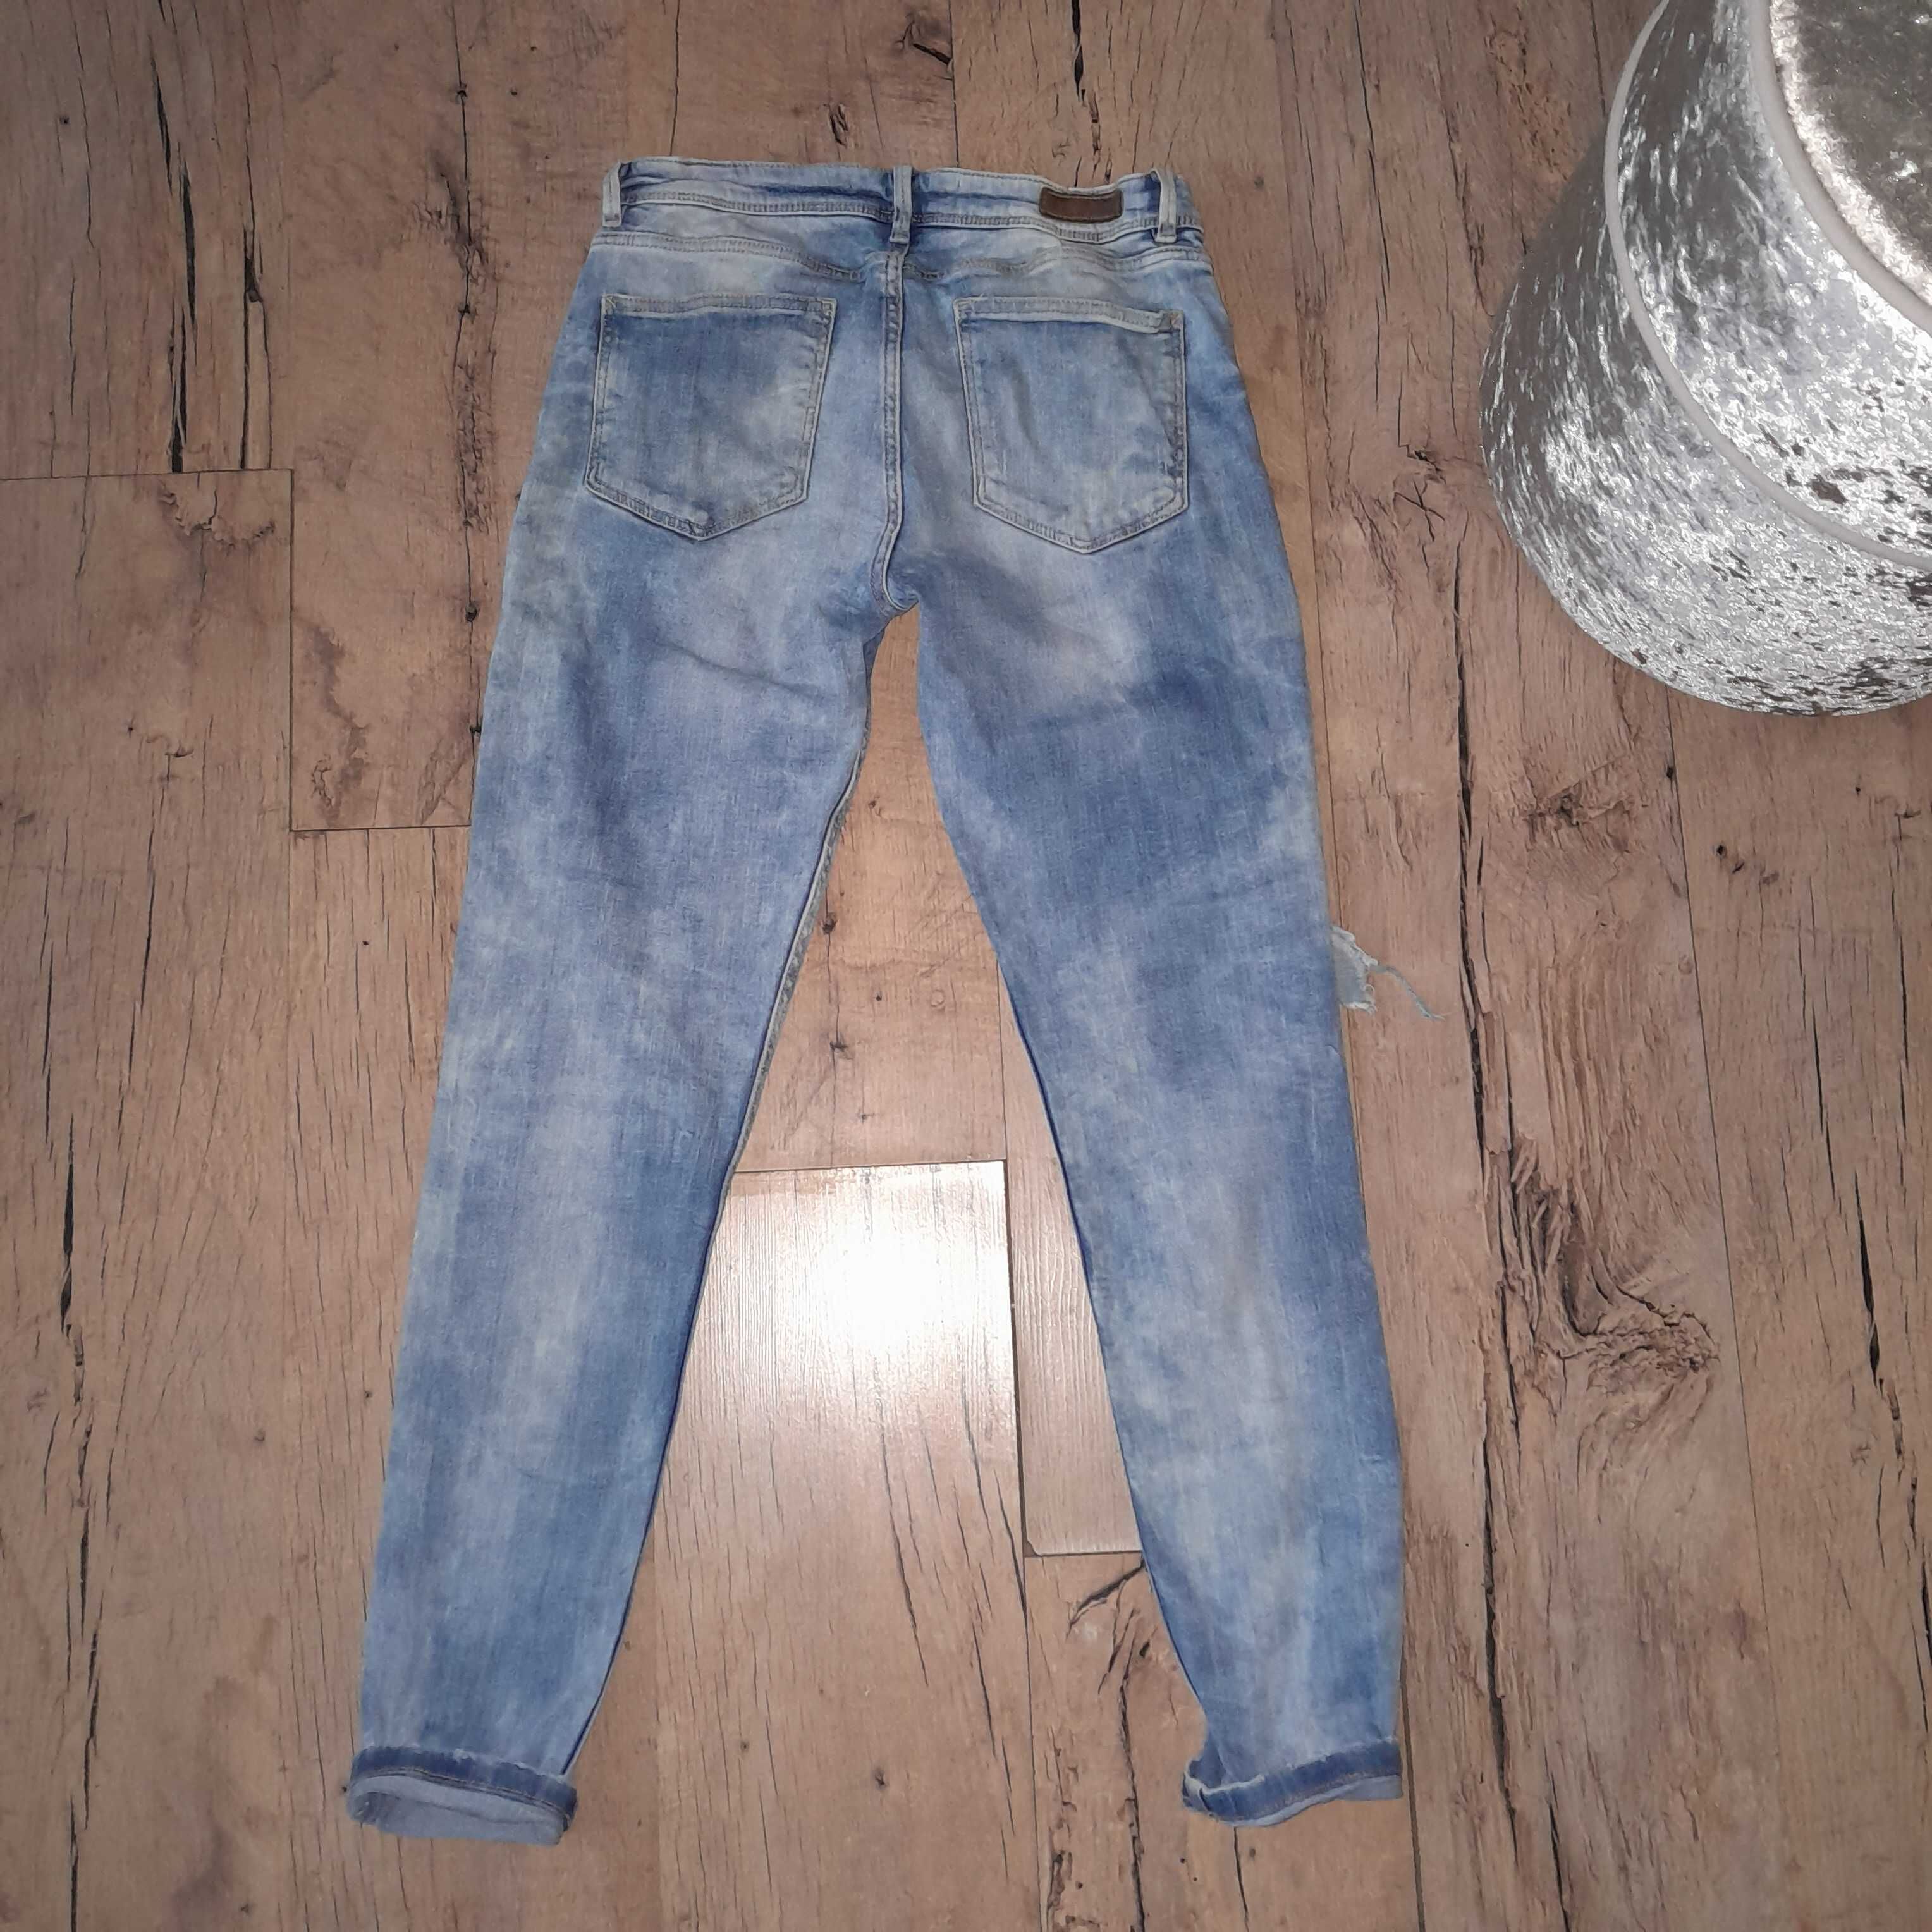 Spodnie jeansowe Zara 38 M S dziury biodrowki rurki